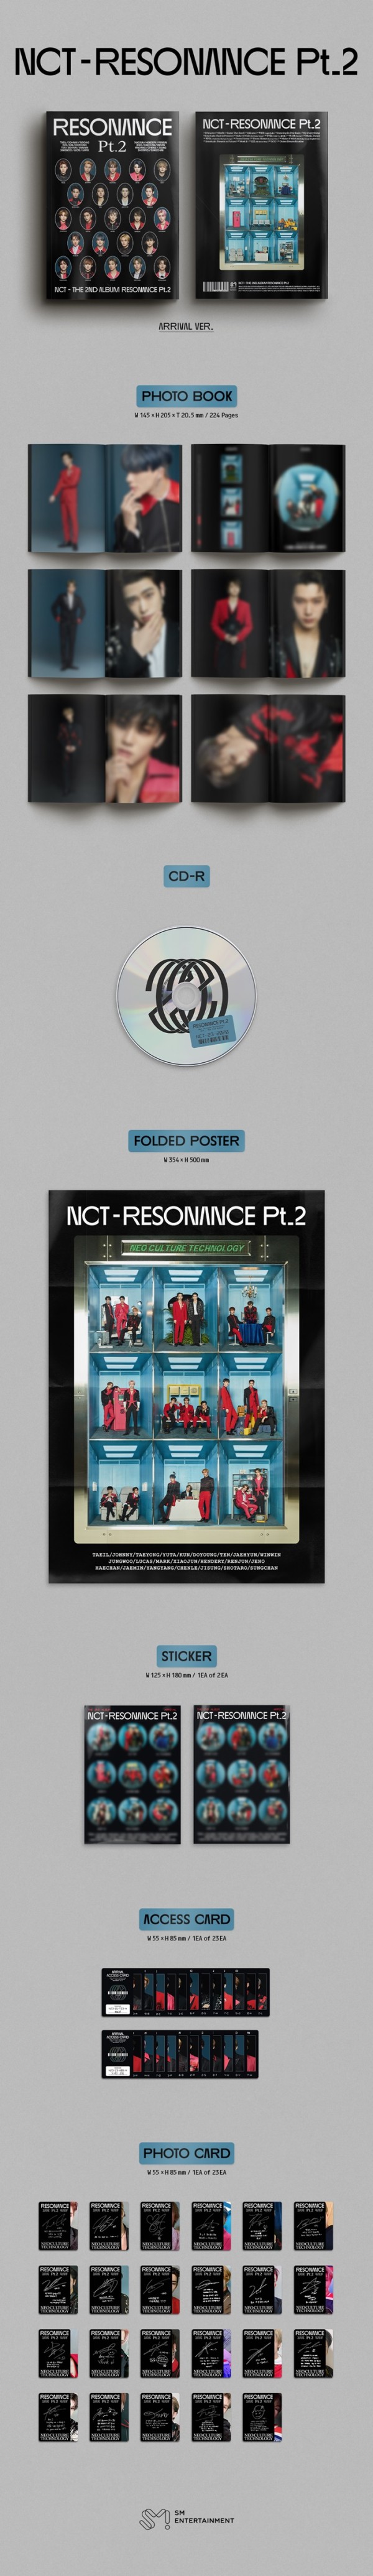 NCT｜韓国セカンドアルバム『RESONANCE Pt.2』Arrival Ver.が登場！ - TOWER RECORDS ONLINE